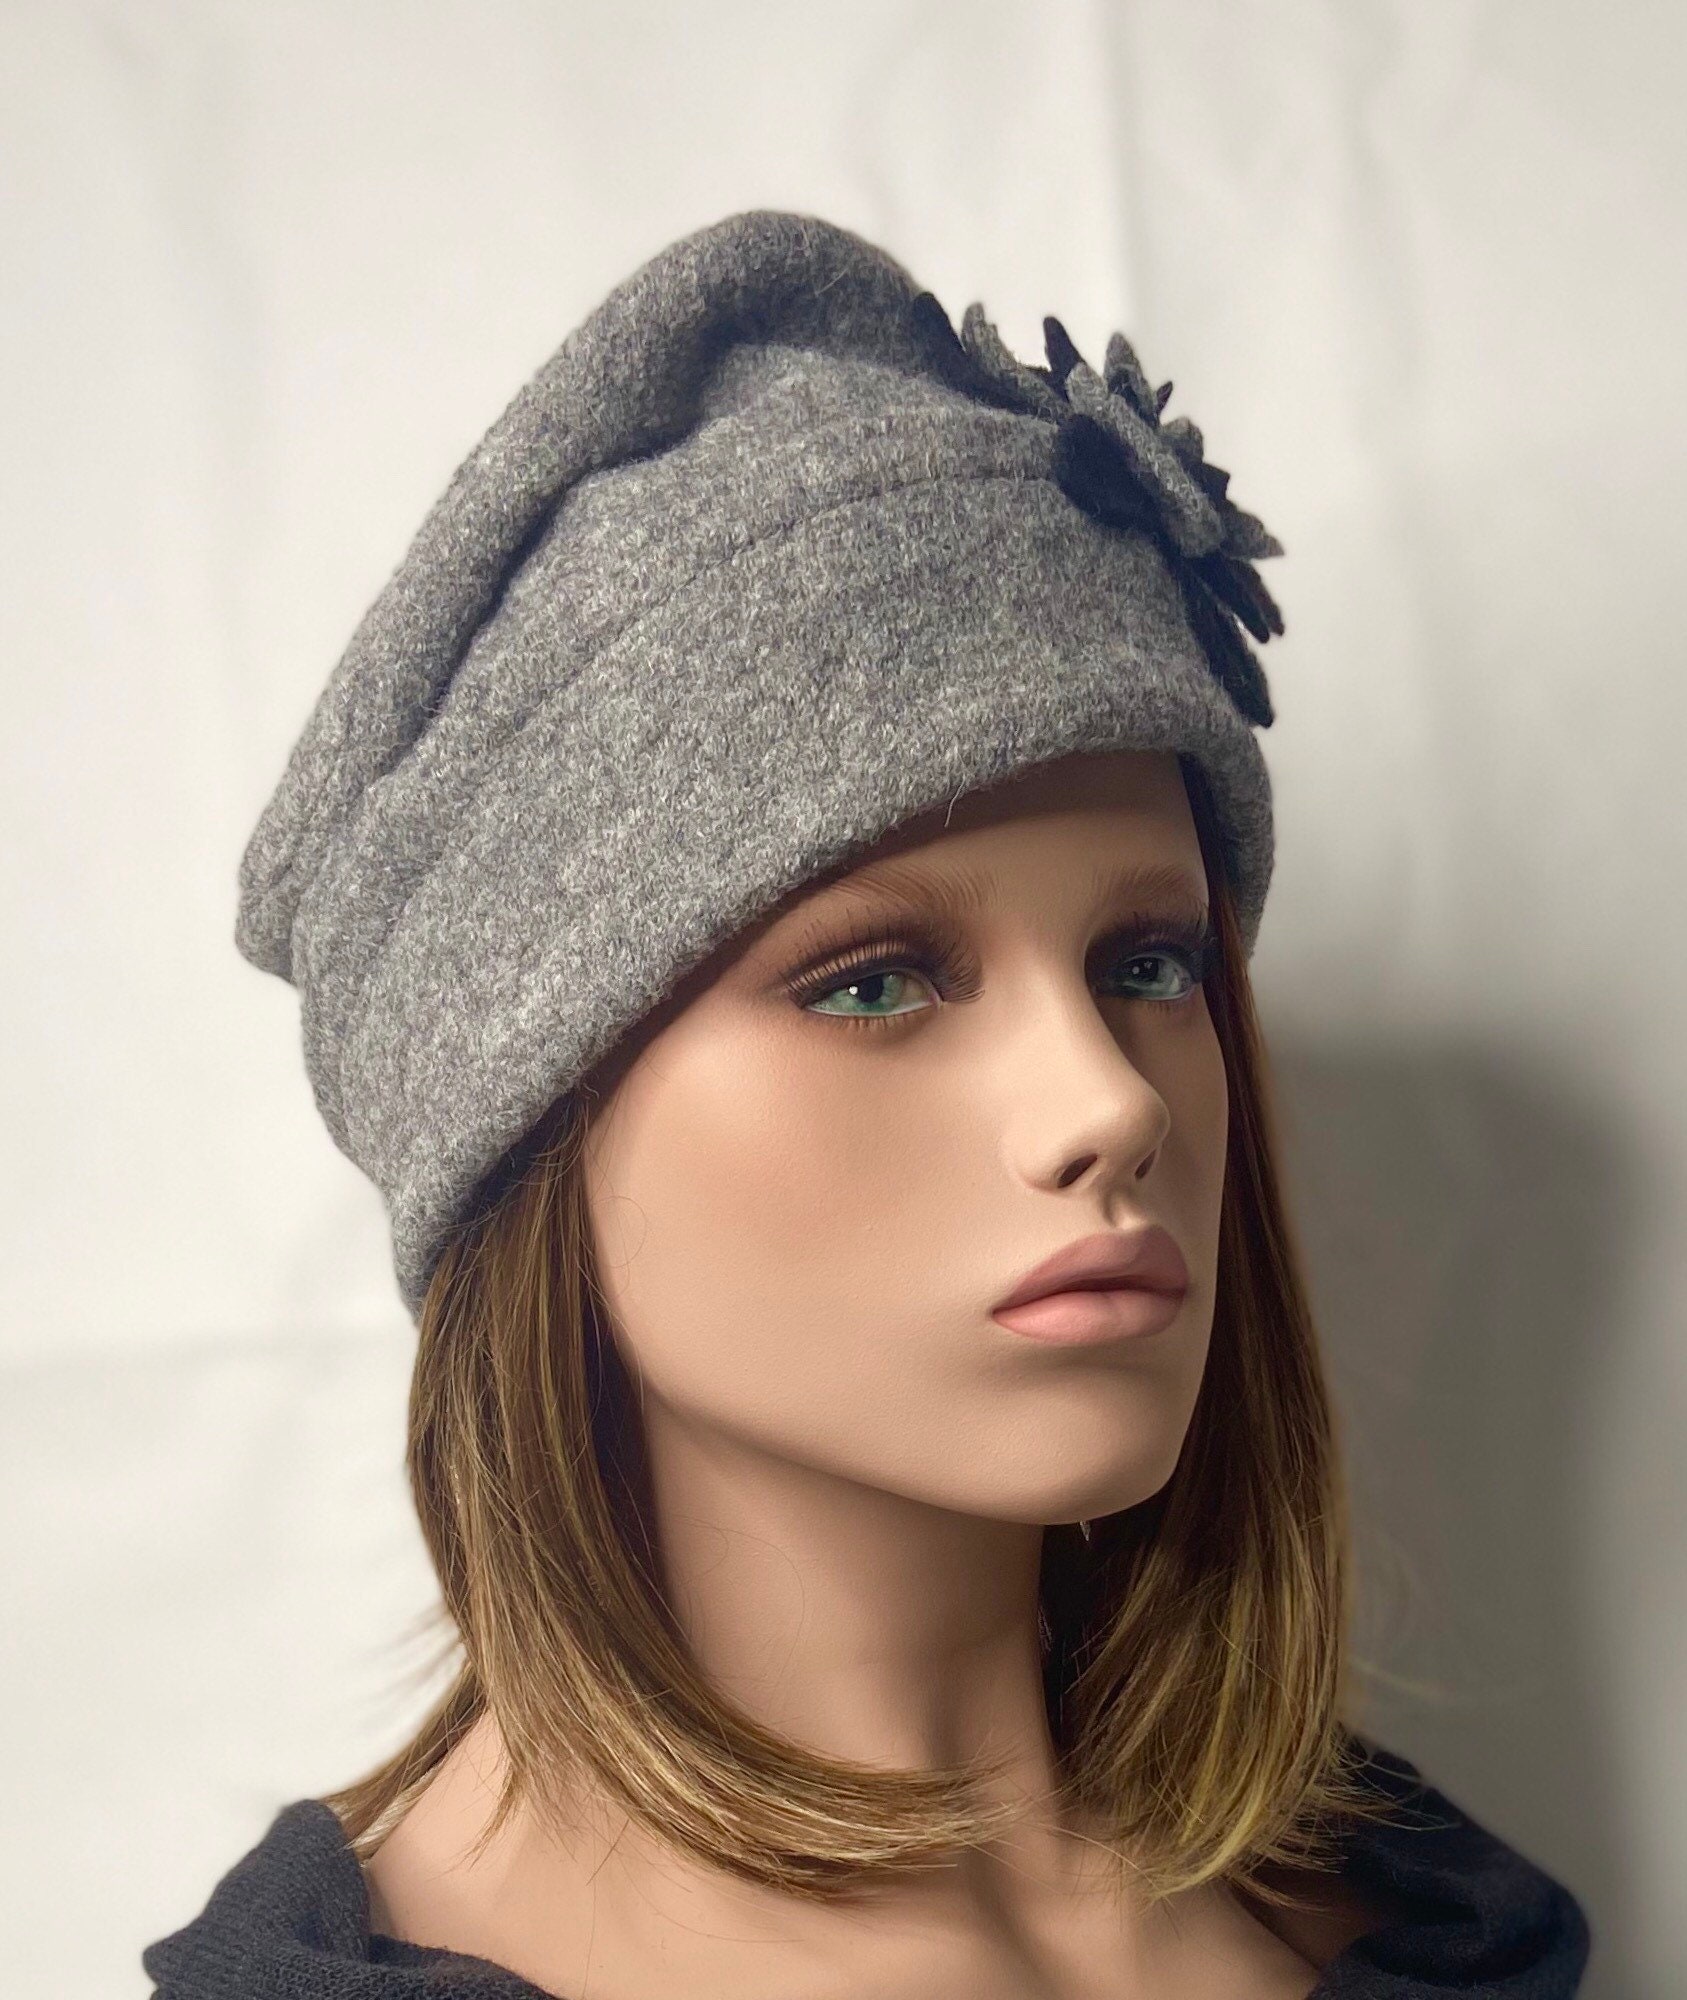 Chapeau hiver bonnet femme homme gris noir MTM laine NEUF M 57 cm